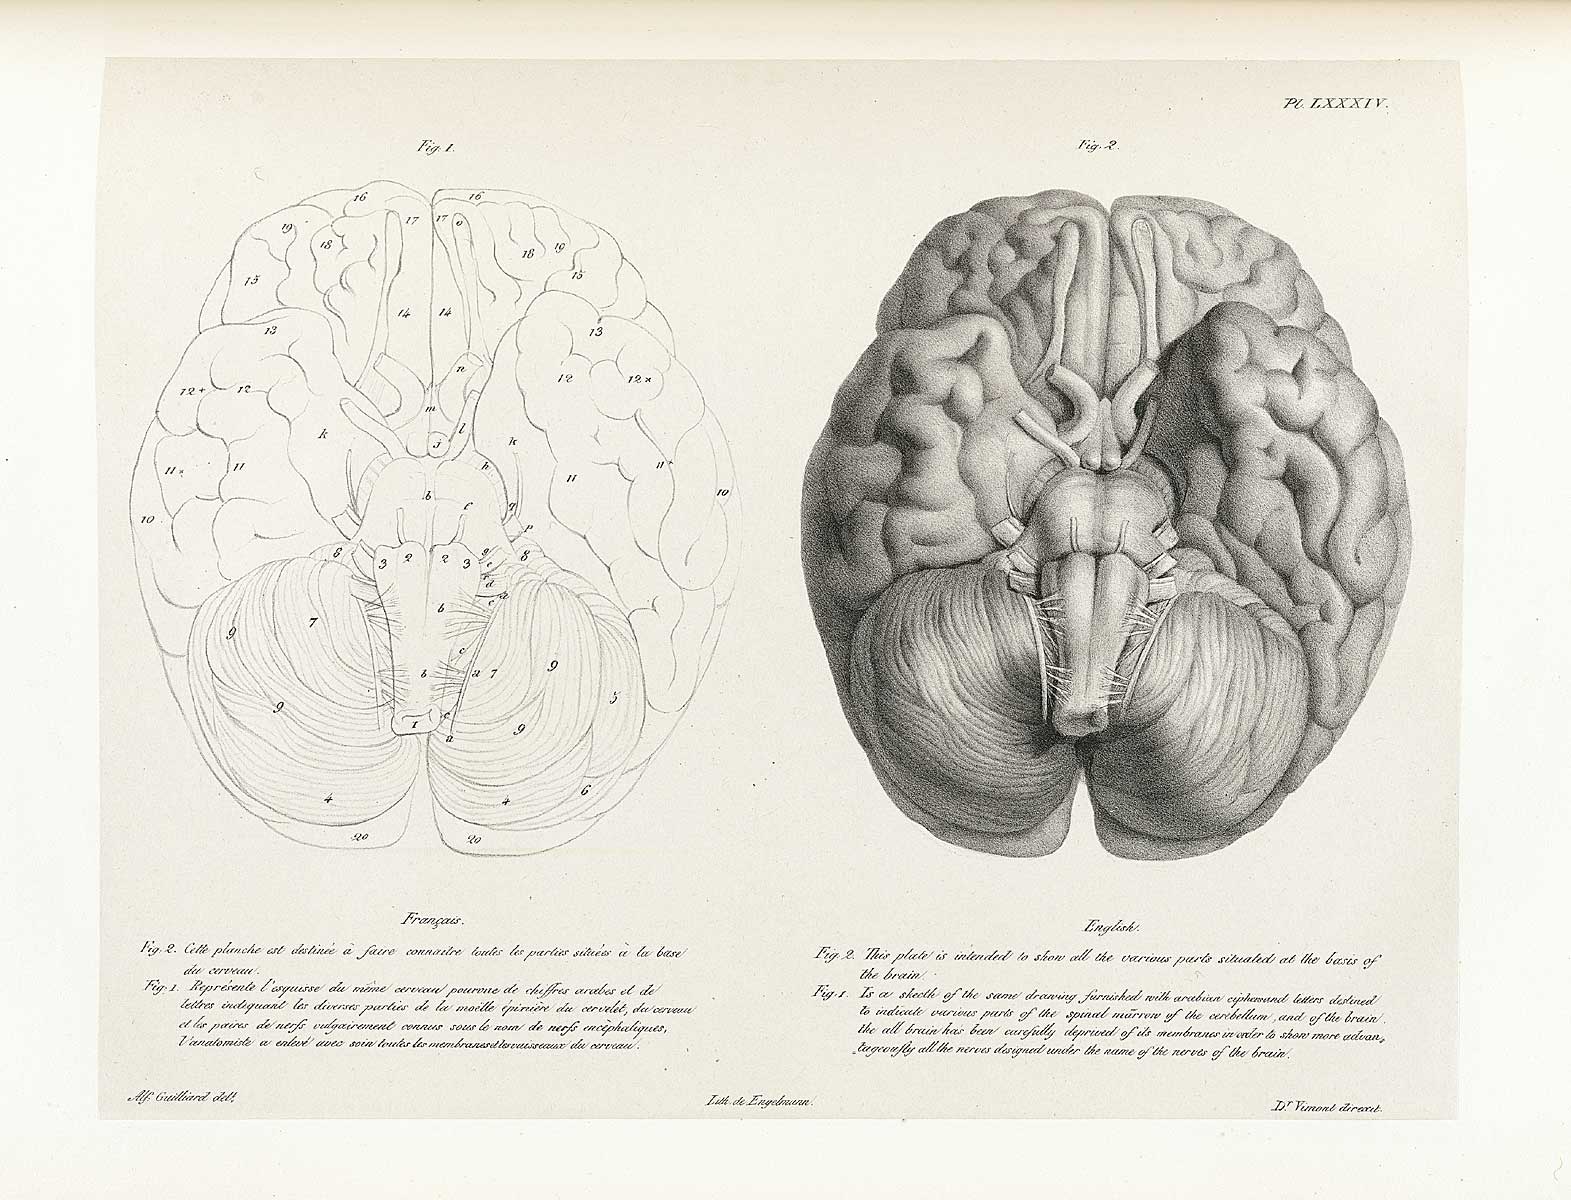 Table 84 of Joseph Vimont's Traité de phrénologie humaine et comparée, featuring two views of the base of the brain.